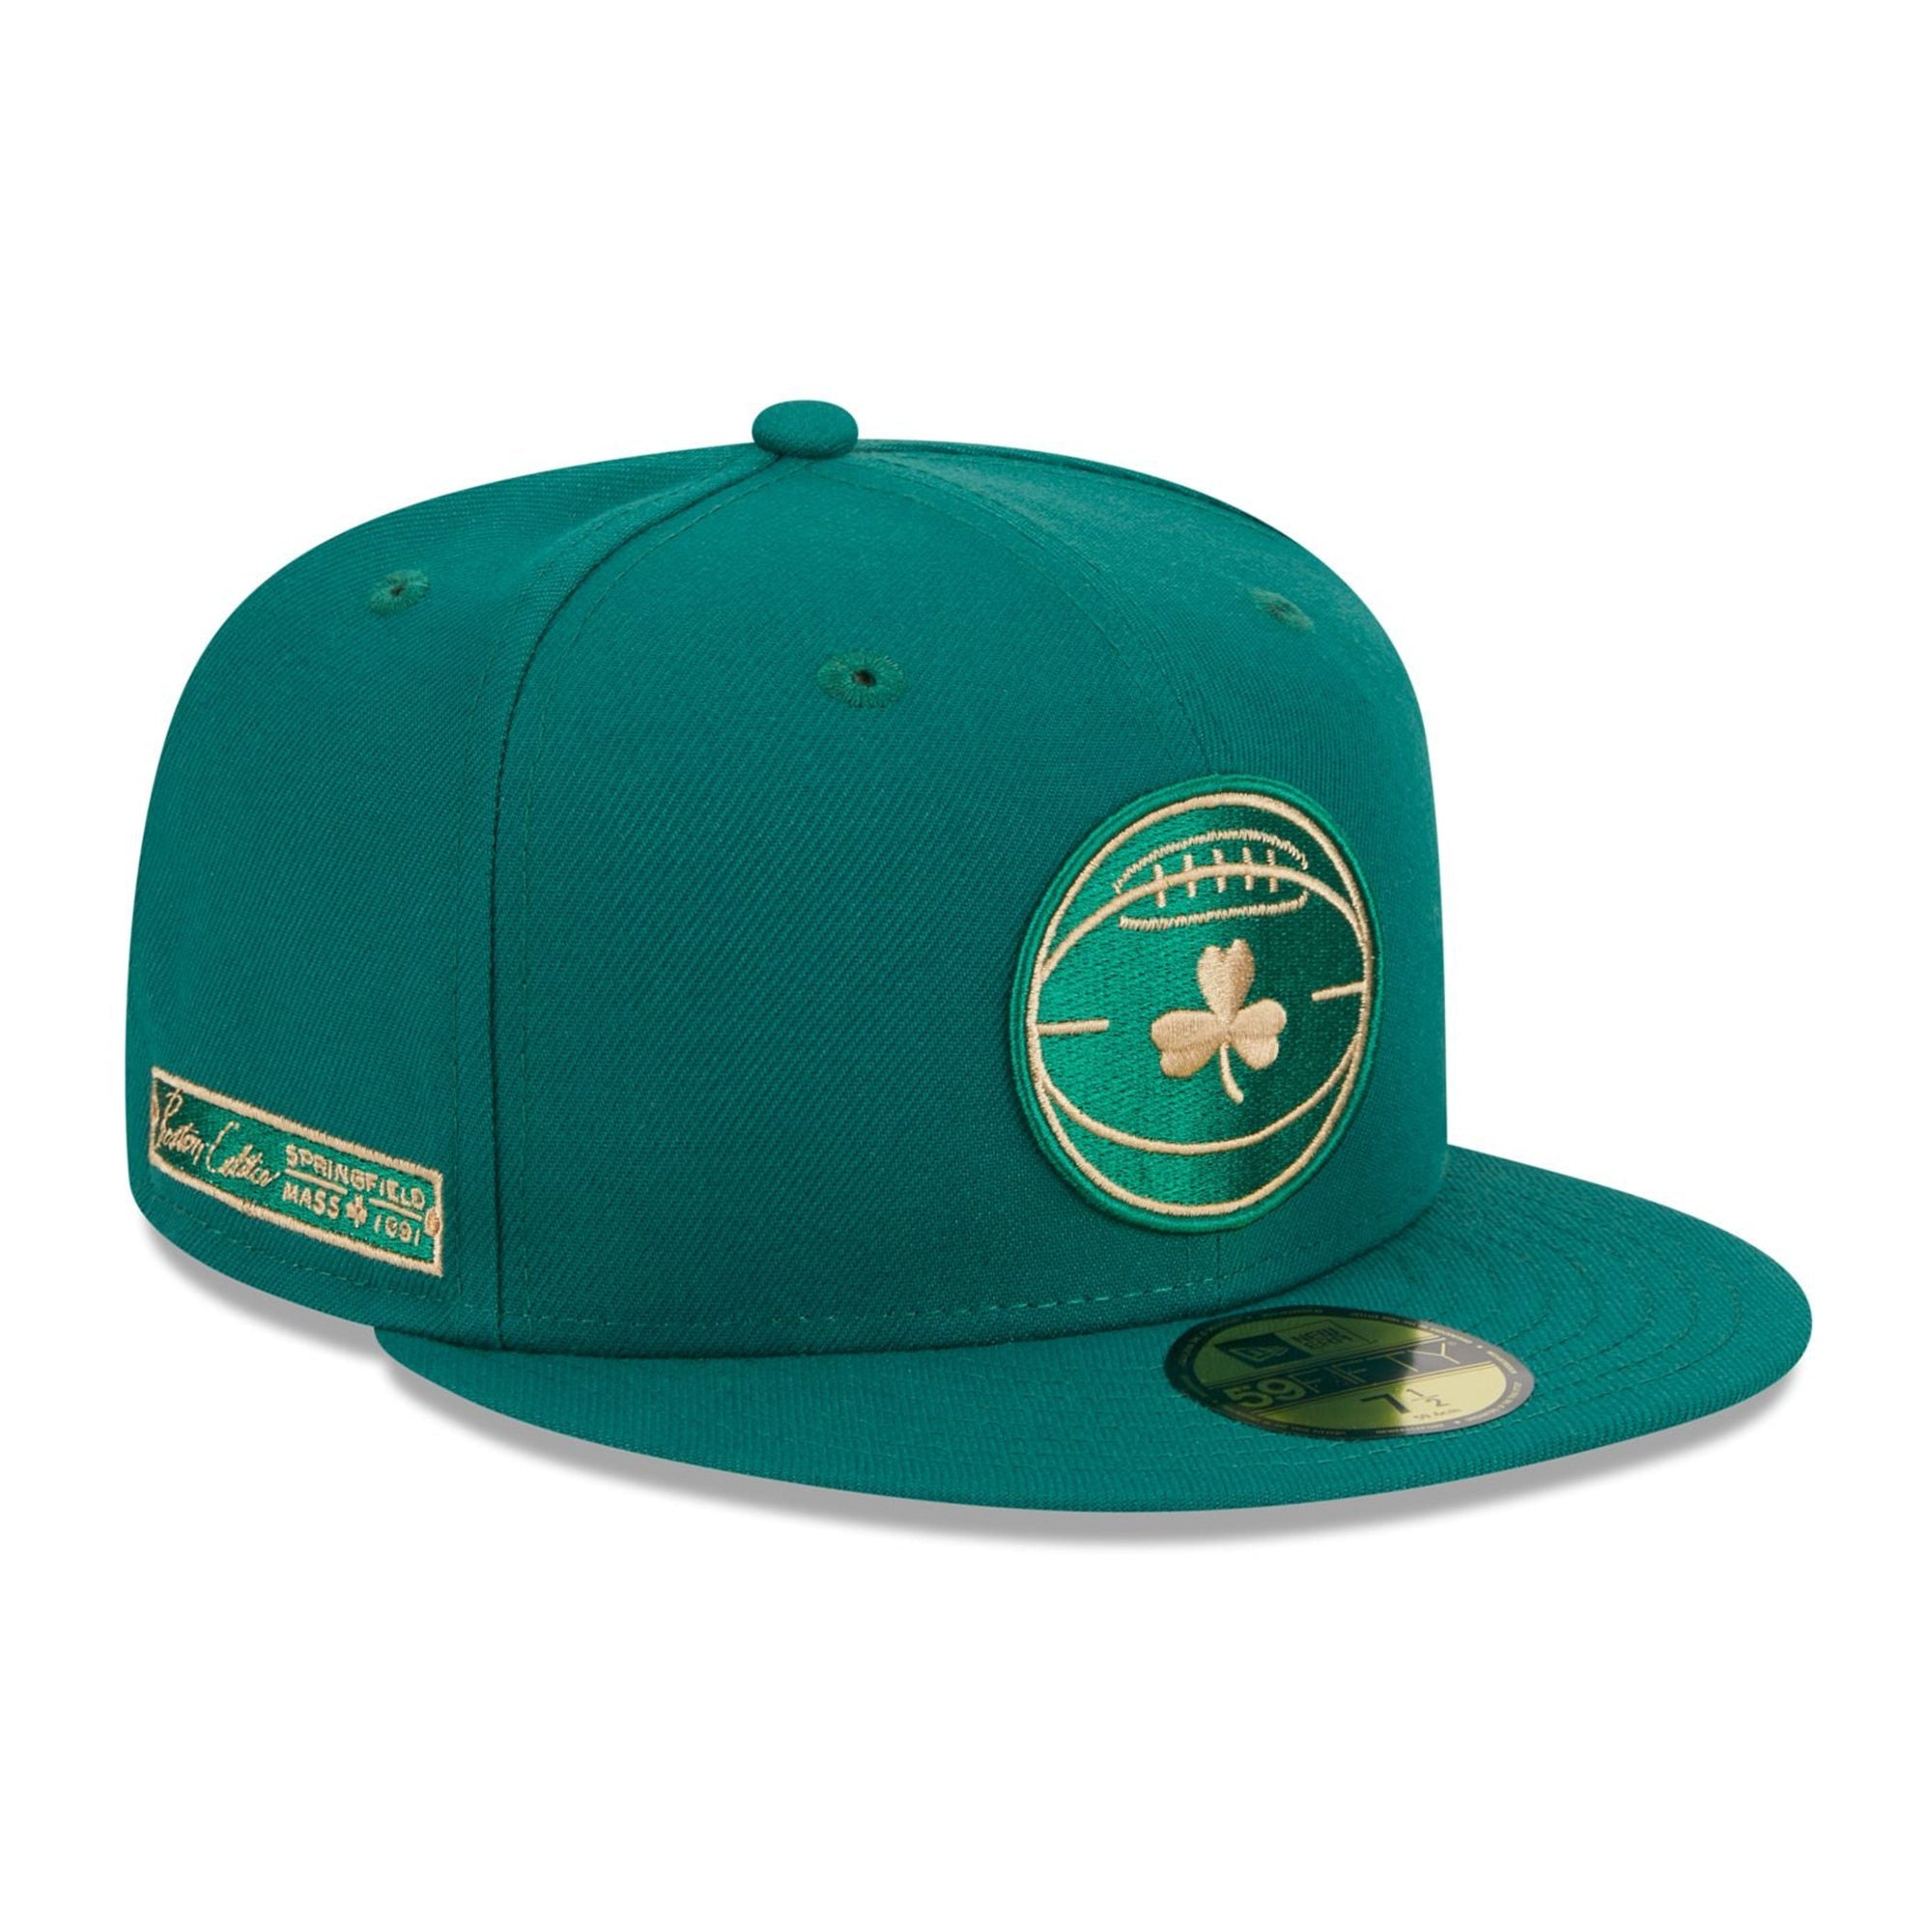 New Era x BAIT Boston Celtics OTC 9Fifty Snapback Cap Green